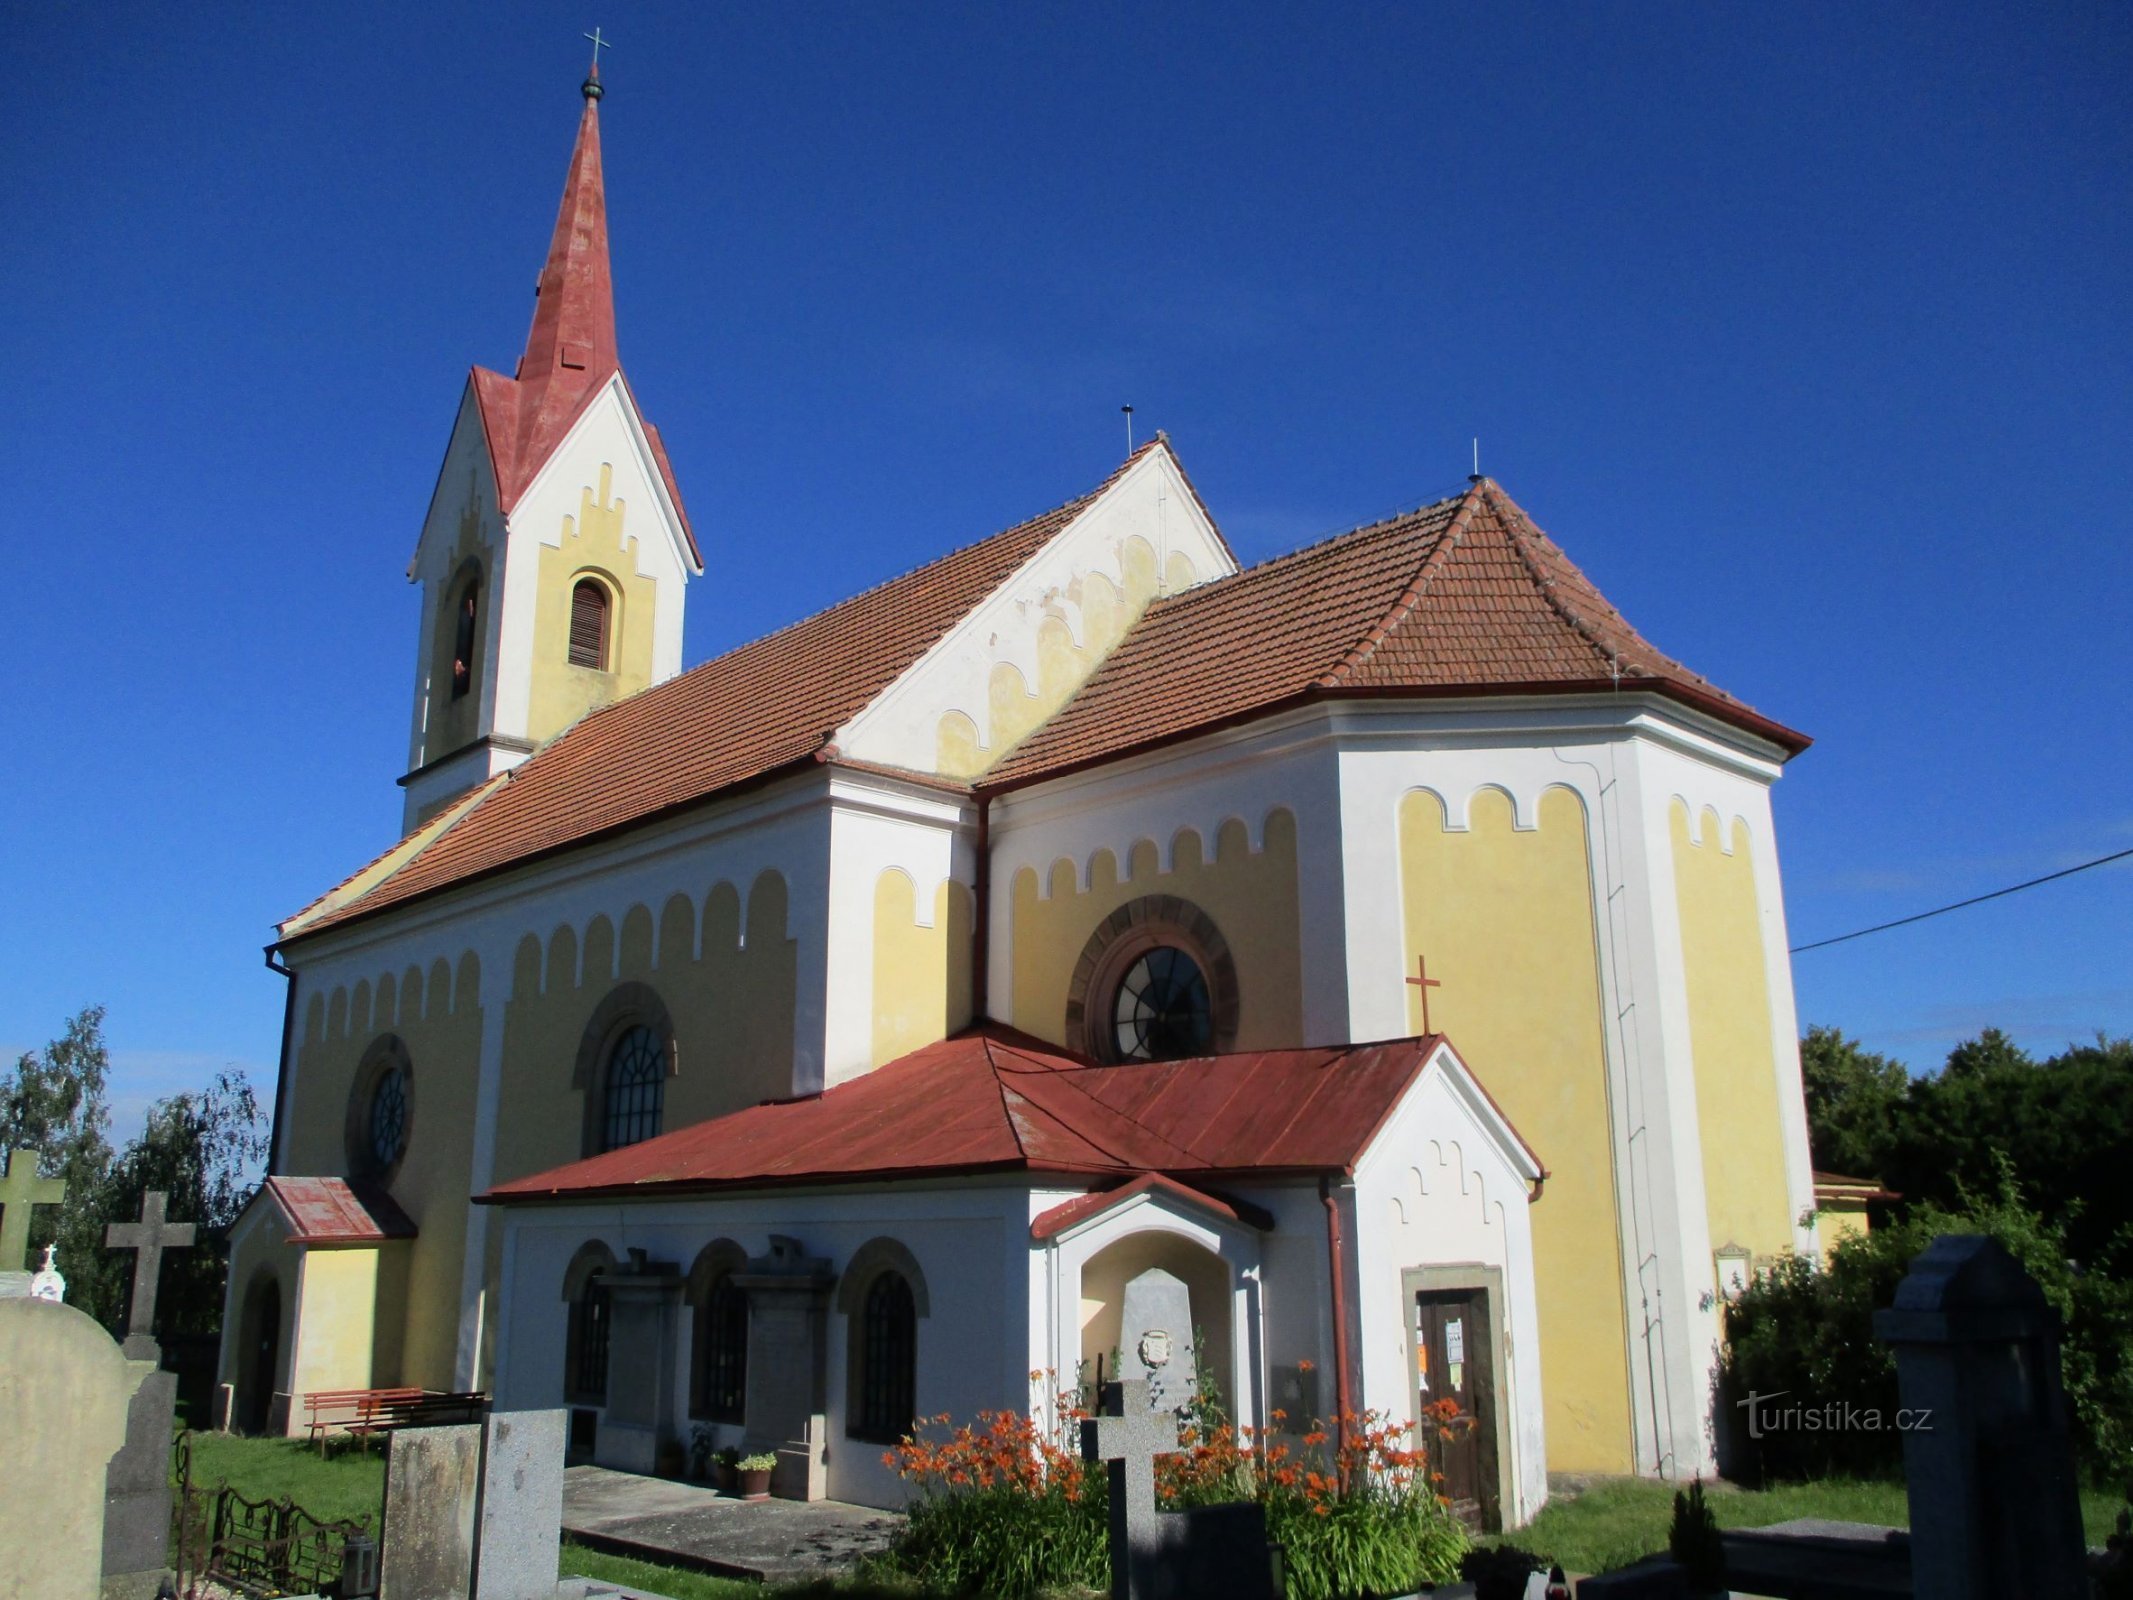 Chiesa di S. Filip e Jakub (Mlékosrby, 5.7.2020/XNUMX/XNUMX)